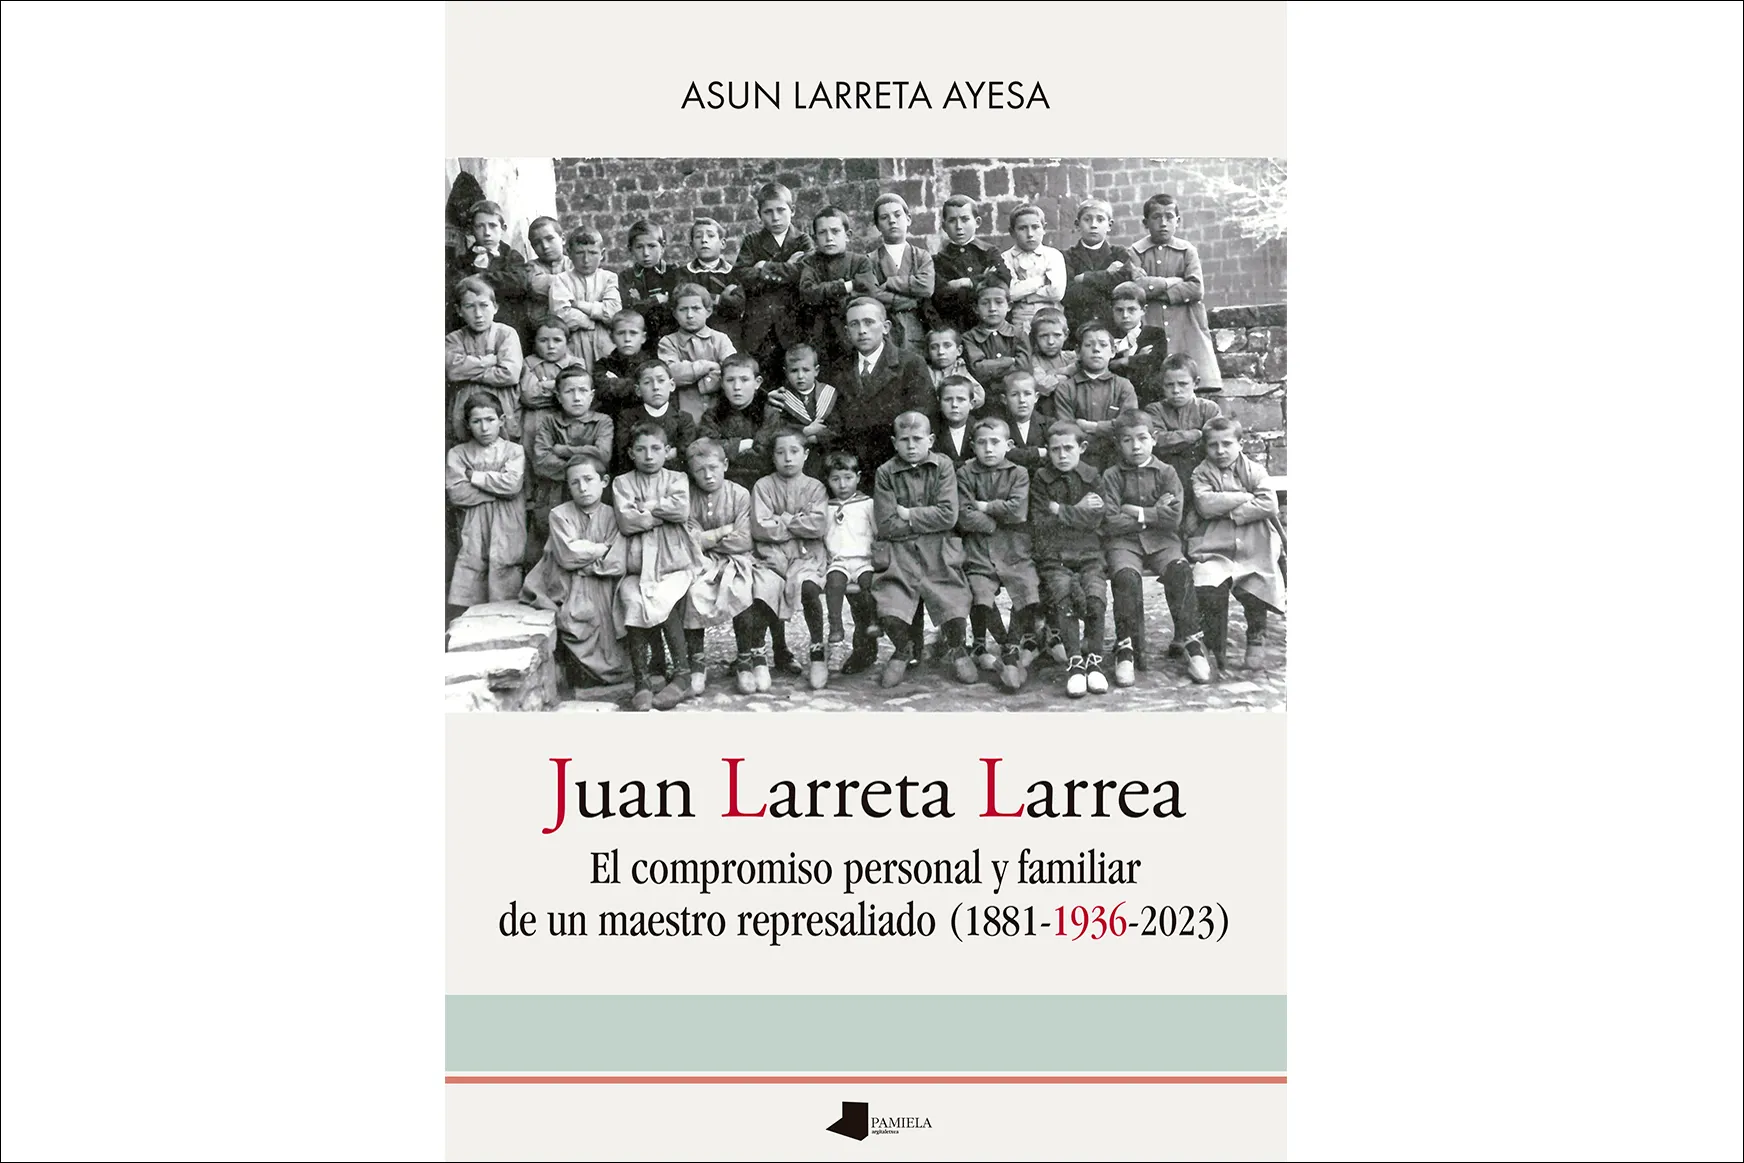 Presentación del libro "El compromiso personal y familiar de un maestro represaliado (1881-1936-2023)"